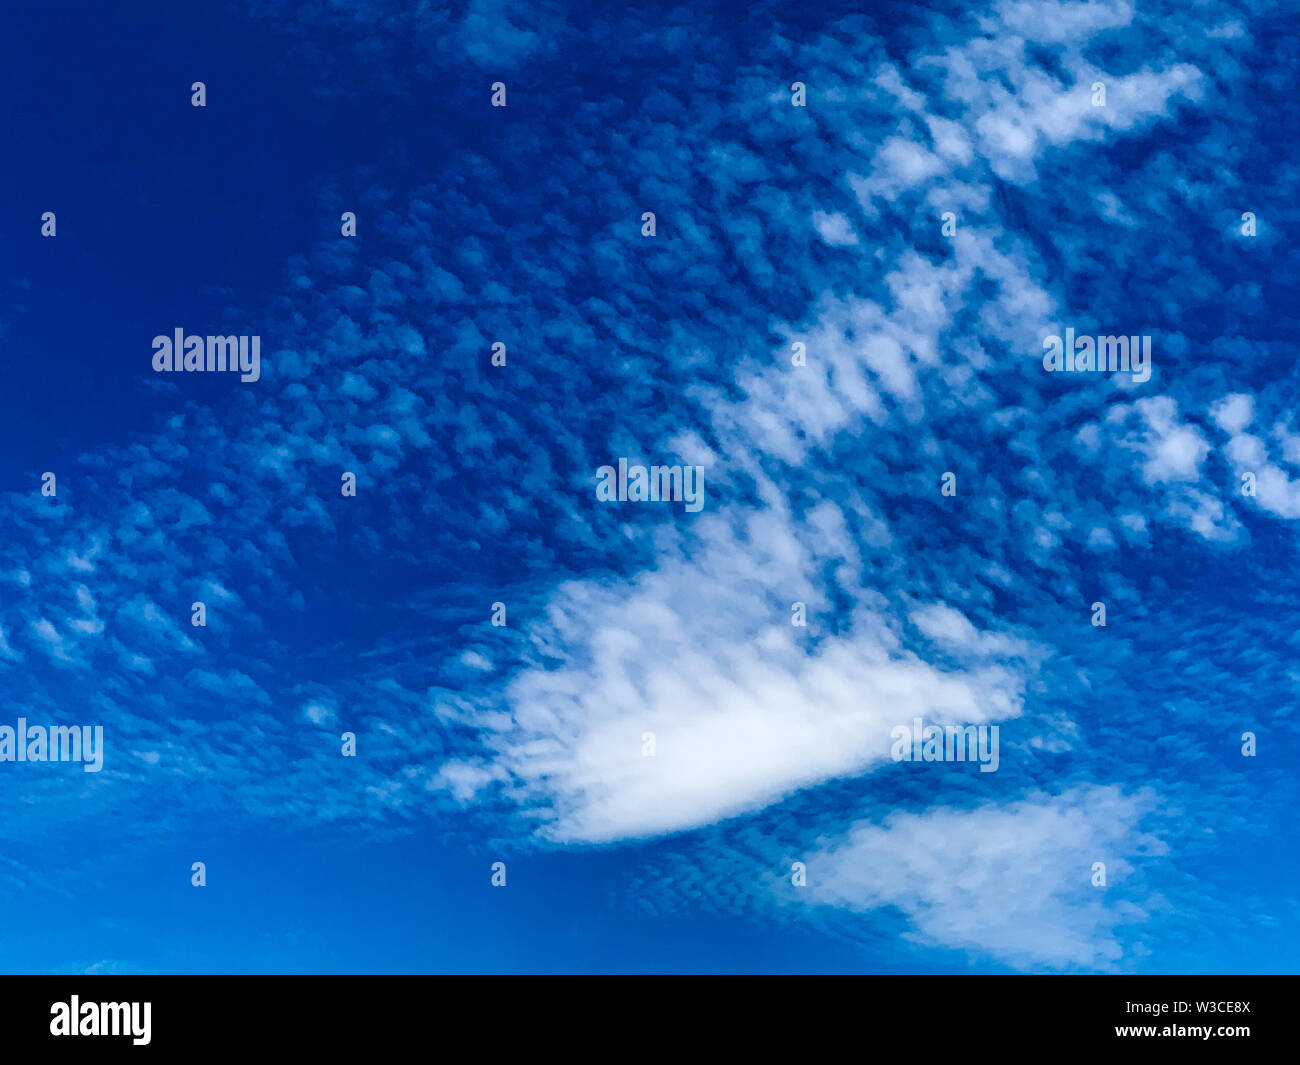 Cirrocumulus nuages sont petites bouffées qui apparaissent généralement en longues rangées haut dans le ciel. Les Cirrocumulus sont normalement blanches Banque D'Images